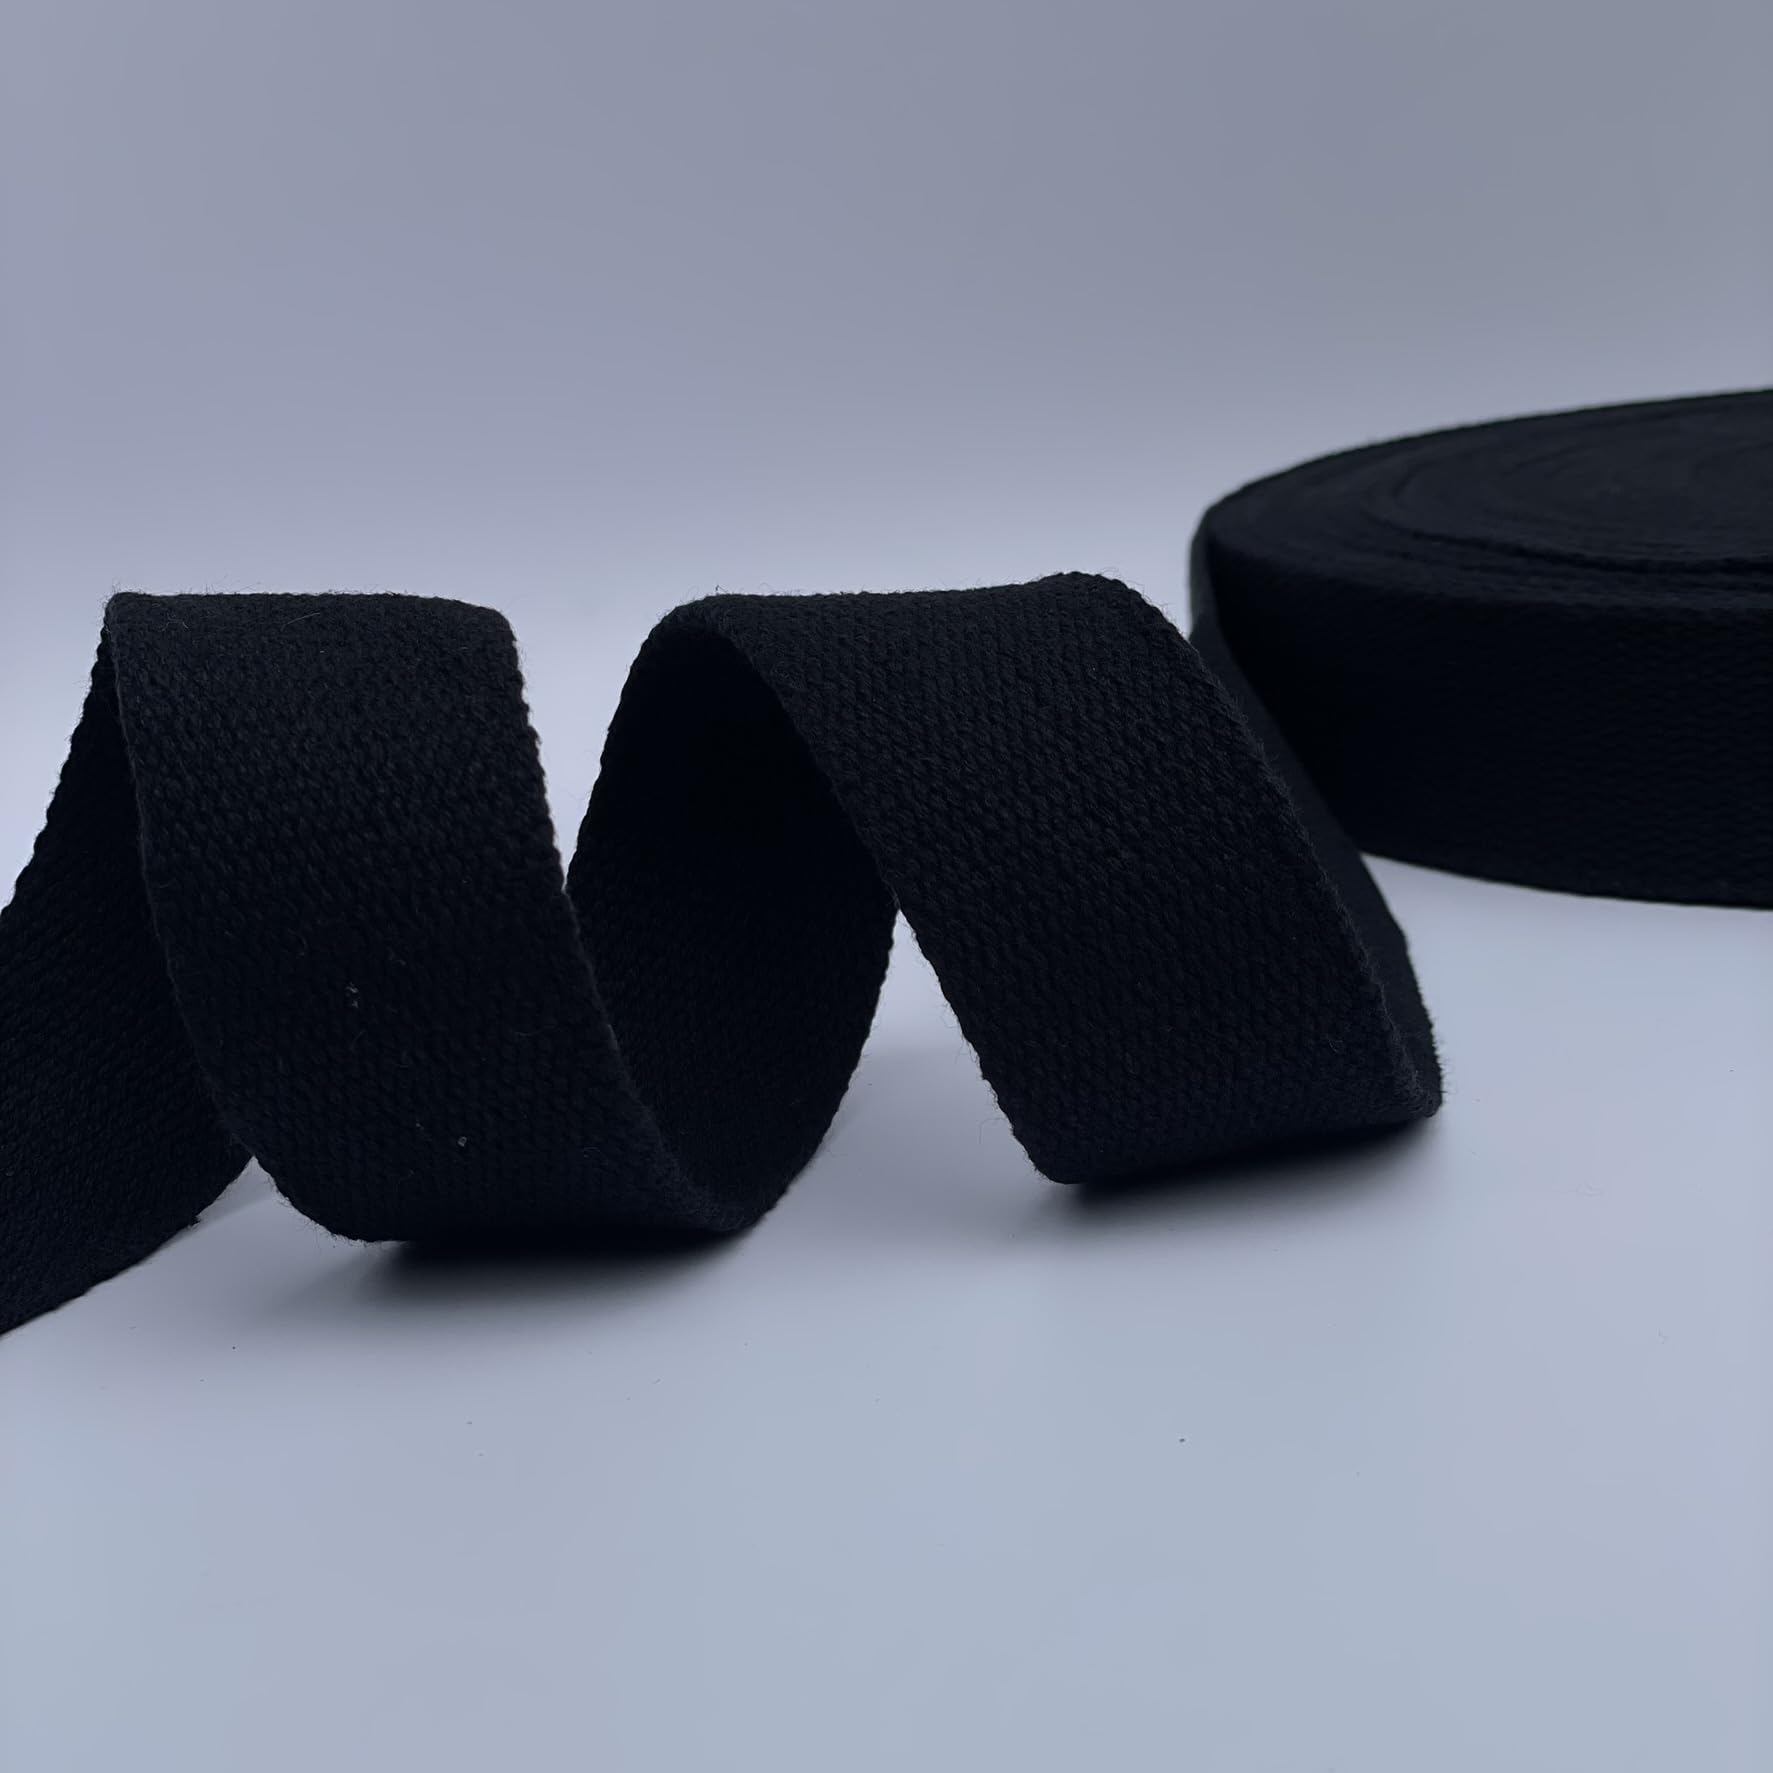 Gurtband, 35 mm, strapazierfähig, Baumwolle, für Taschen, Rucksack, Taschen, Gepäckgurt, Gurtband, Schürze, Taschenherstellung (3 Meter, Schwarz) von Discover Direct